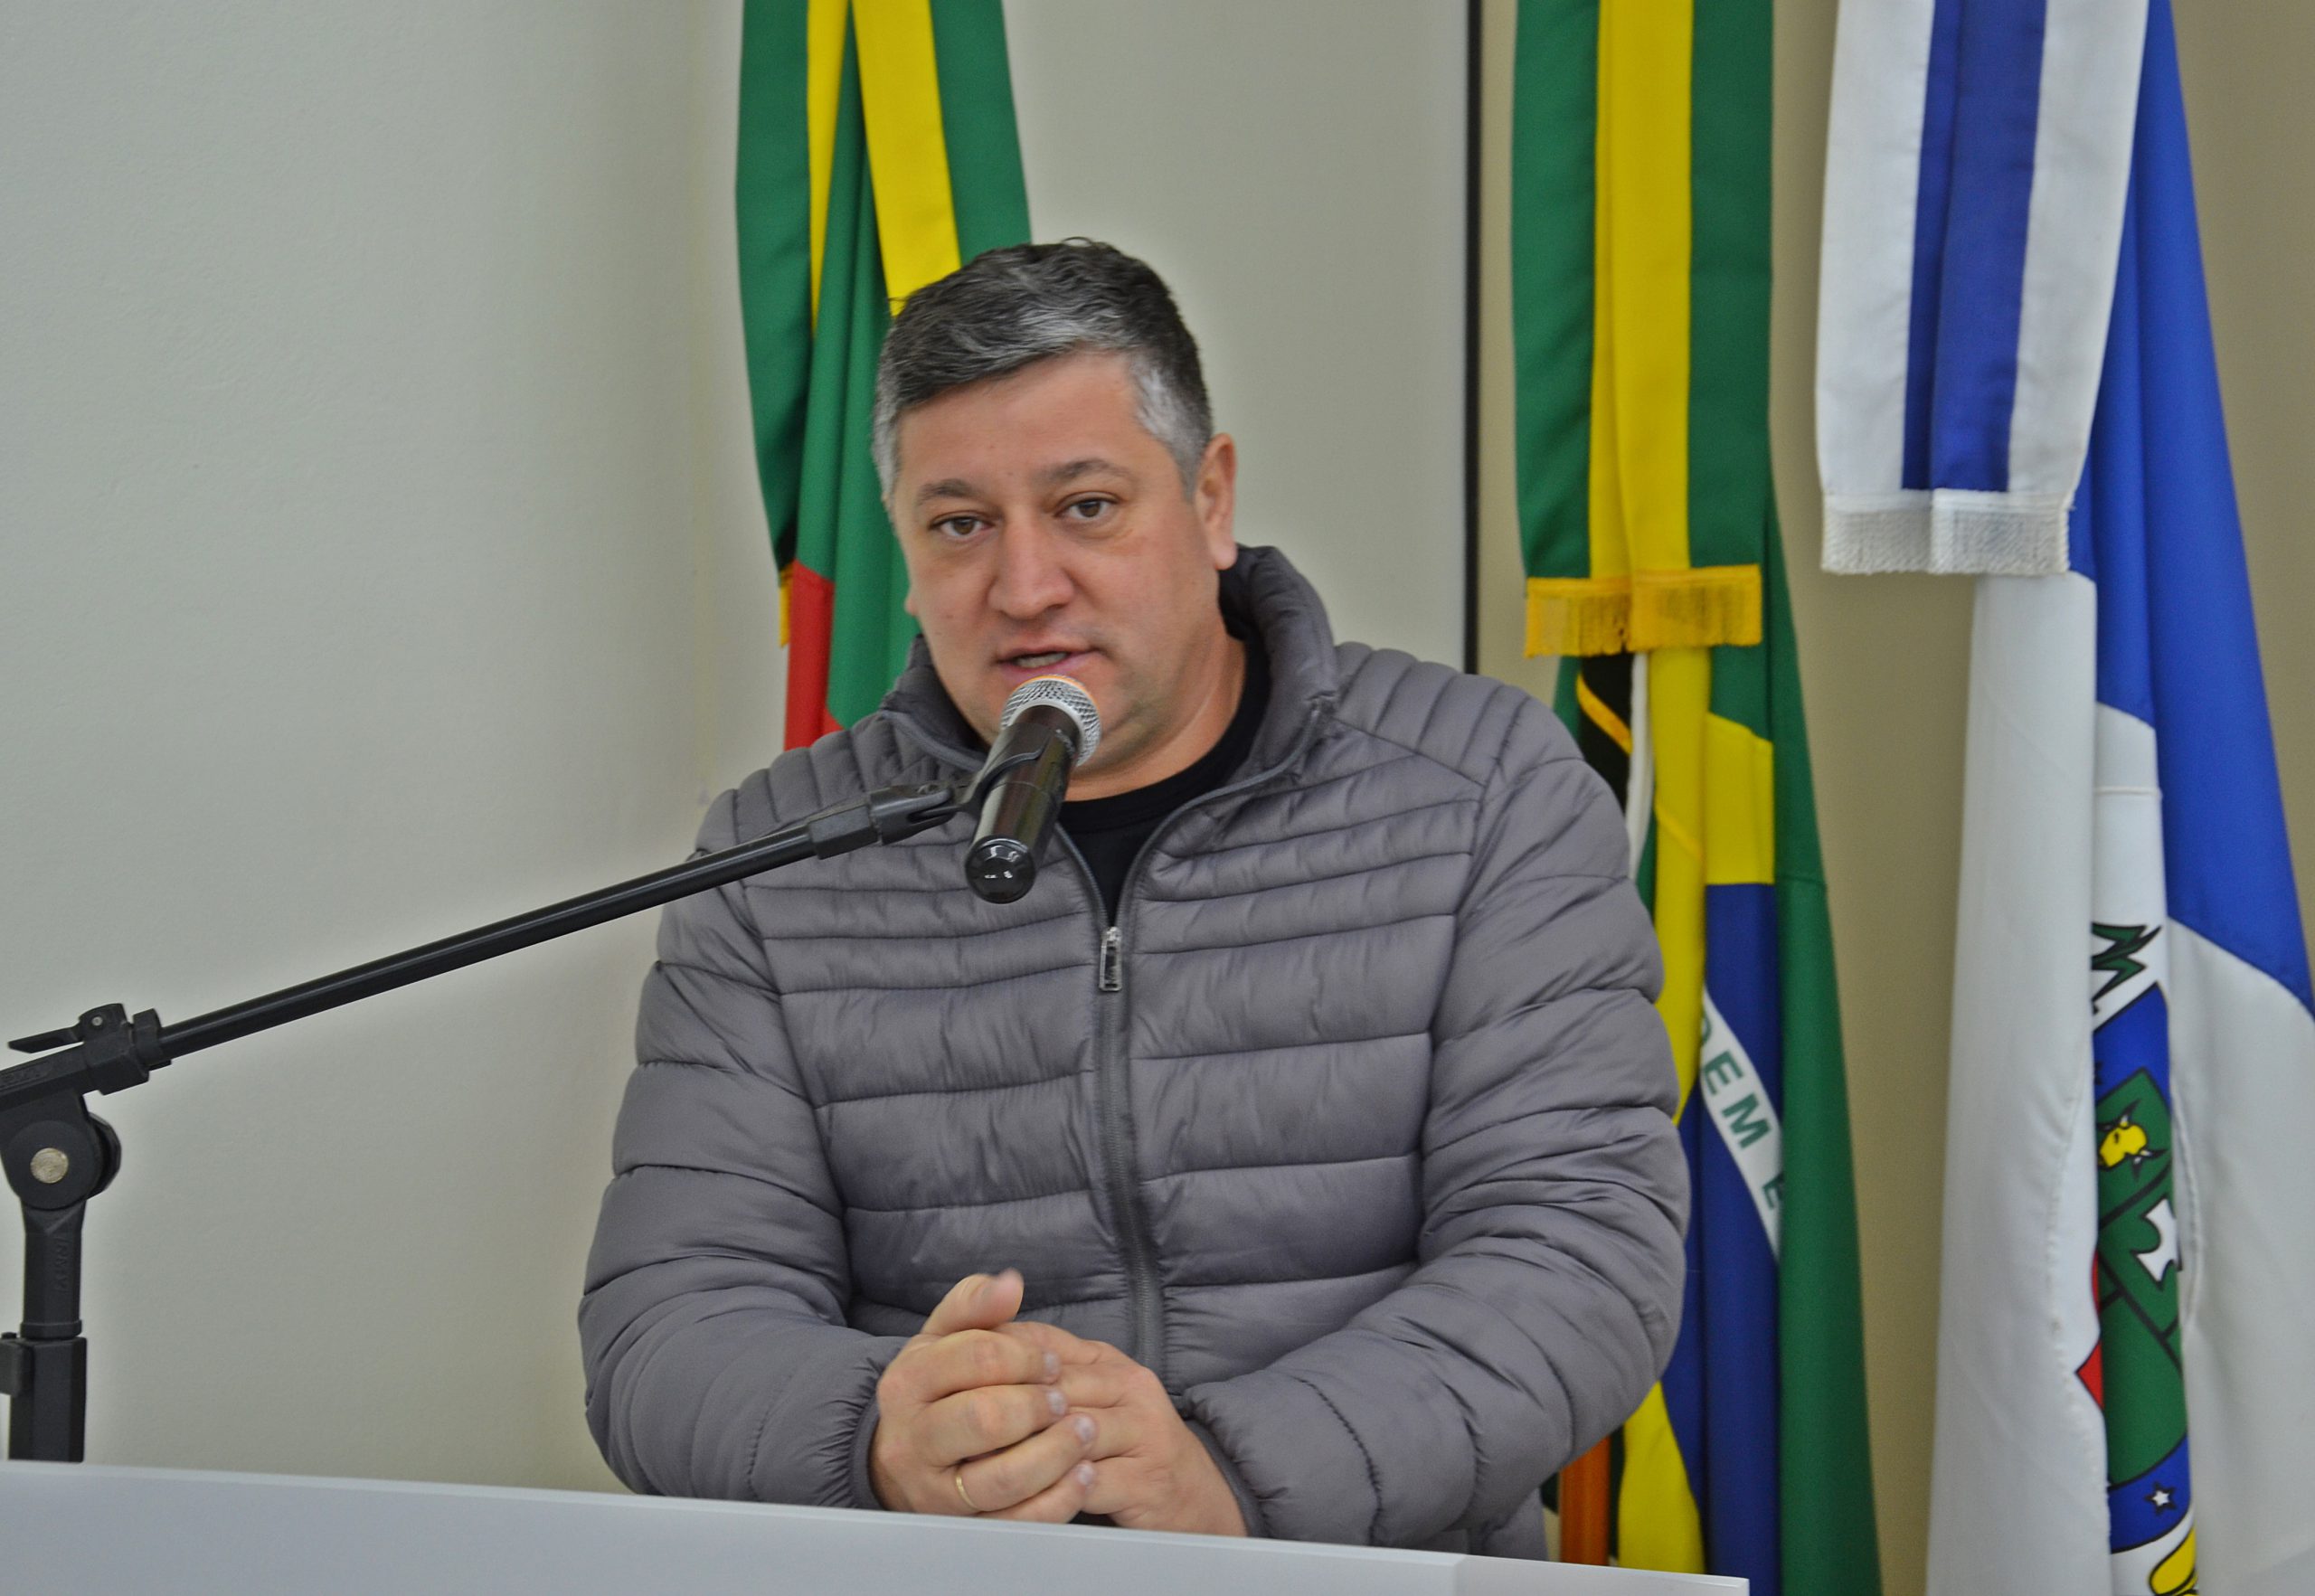 Diego apresenta projeto de lei que inclui ‘Setembro Verde’ no calendário oficial do município